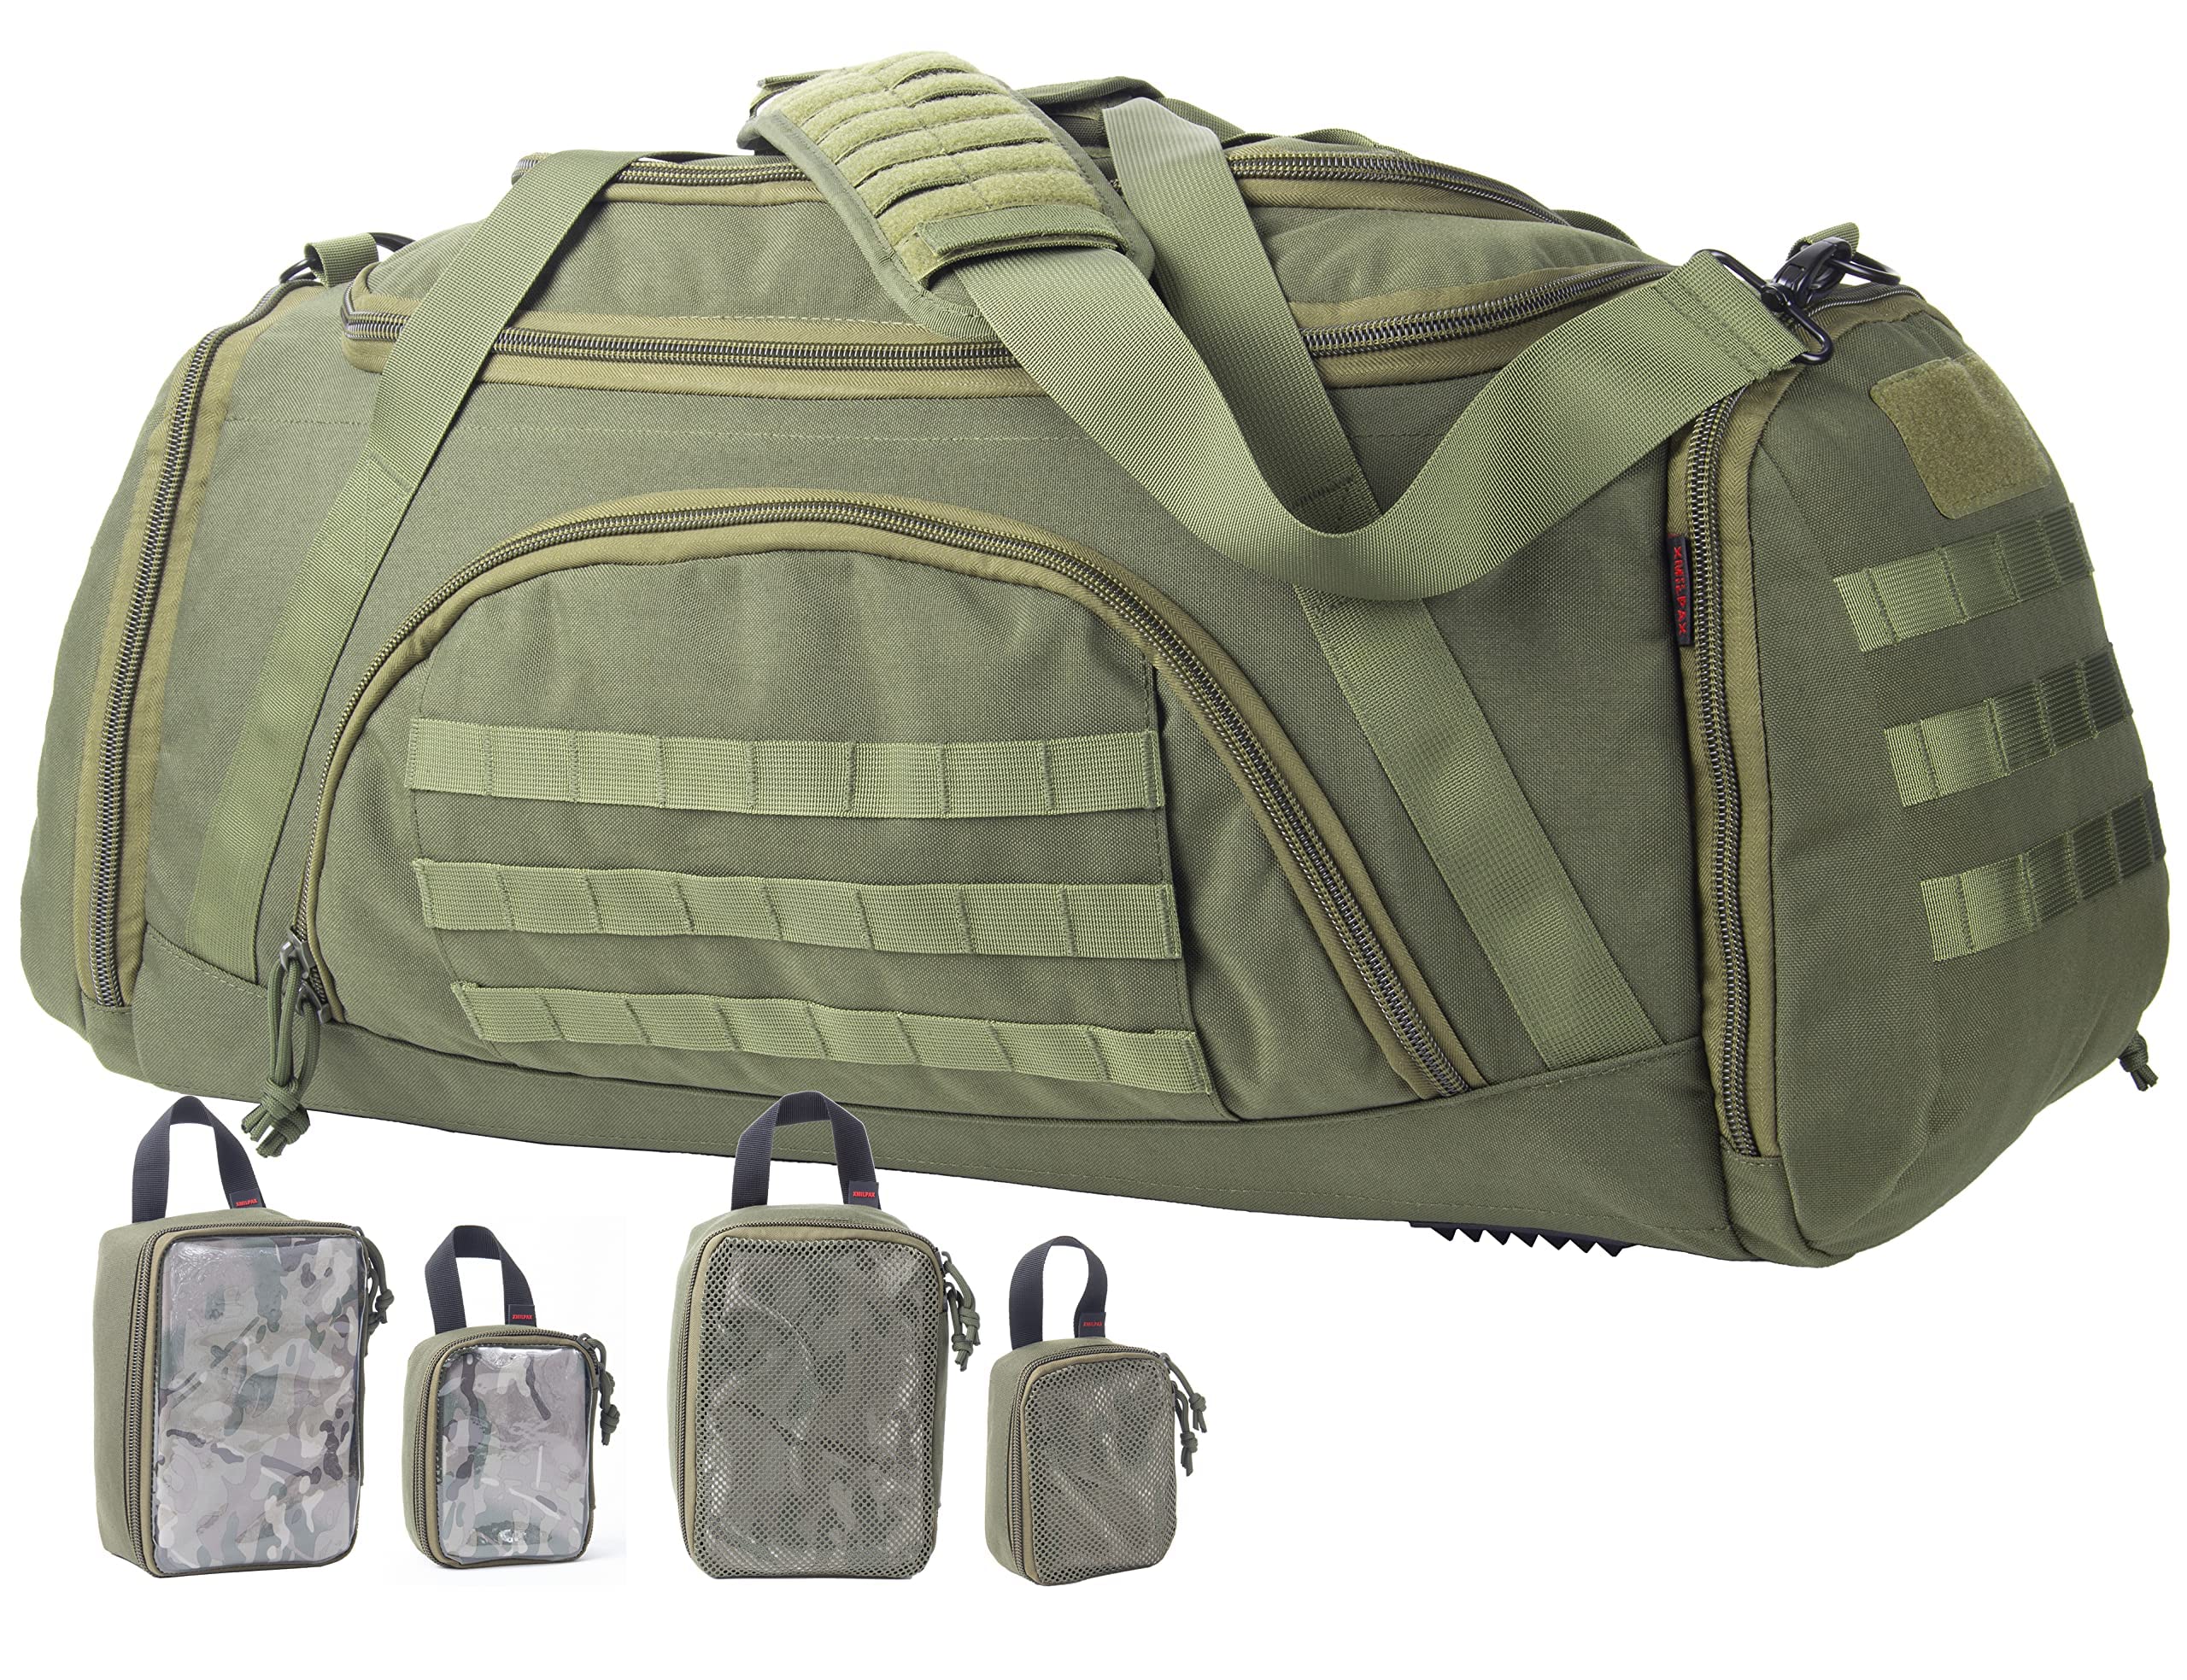 送料無料Tactical Duffle Bag MOLLE Gear Bag with 4 Modular Gear Organizers Packing Cubes. Ideal for Hunting Shooting Rang